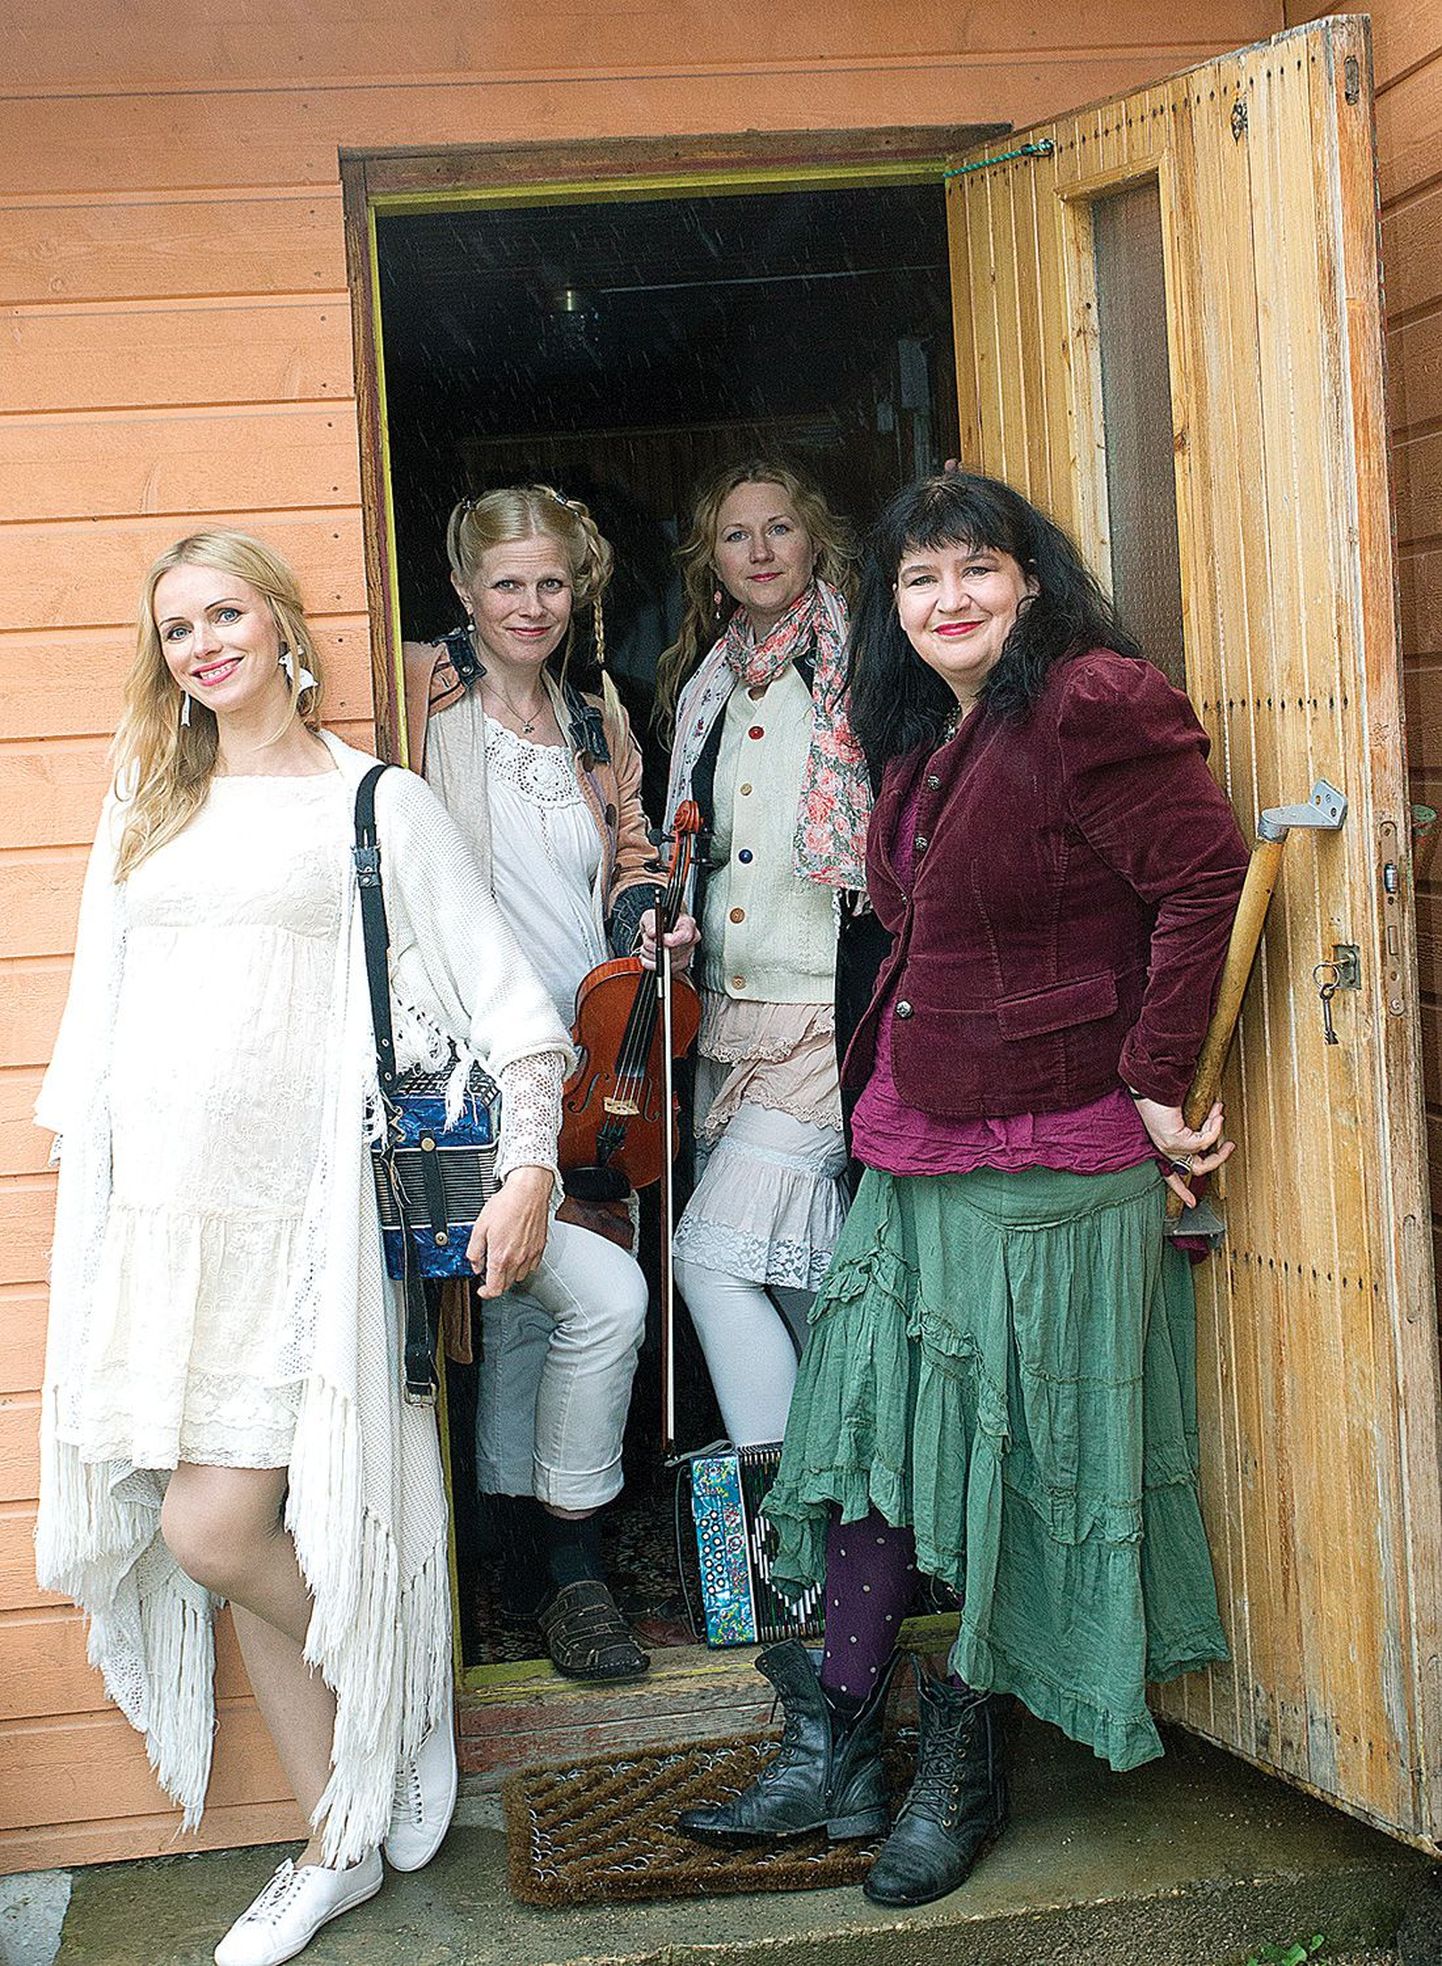 Ansamblis Naised Köögis mängivad ja laulavad Kristiina Ehin (vasakult, laul ja karmoška), Sofia Joons (viiul ja laul), Katrin Laidre (laul, karmoška ning kontrabassist ja vannist meisterdatud kontravann) ja Kairi Leivo (laul).